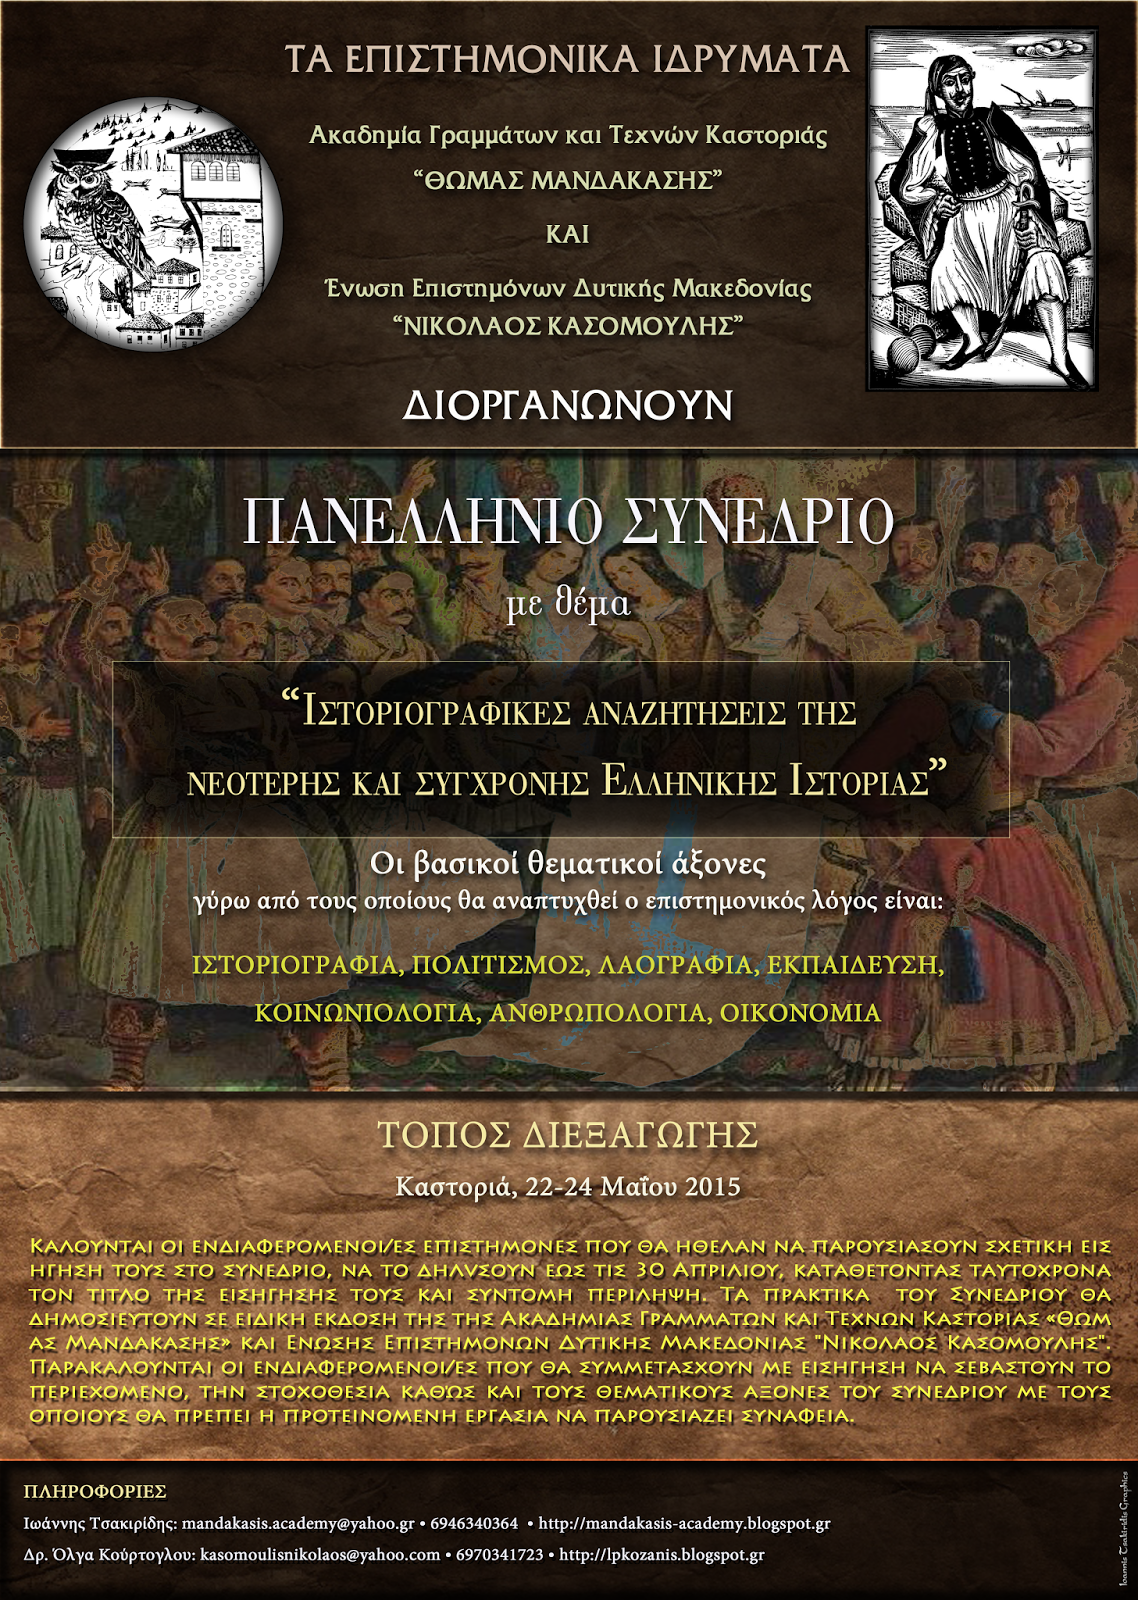 Συνδιοργάνωση Συνεδρίου της Ακαδημίας μας με θέμα “Ιστοριογραφικές αναζητήσεις της νεότερης και σύγχρονης Ελληνικής Ιστορίας”